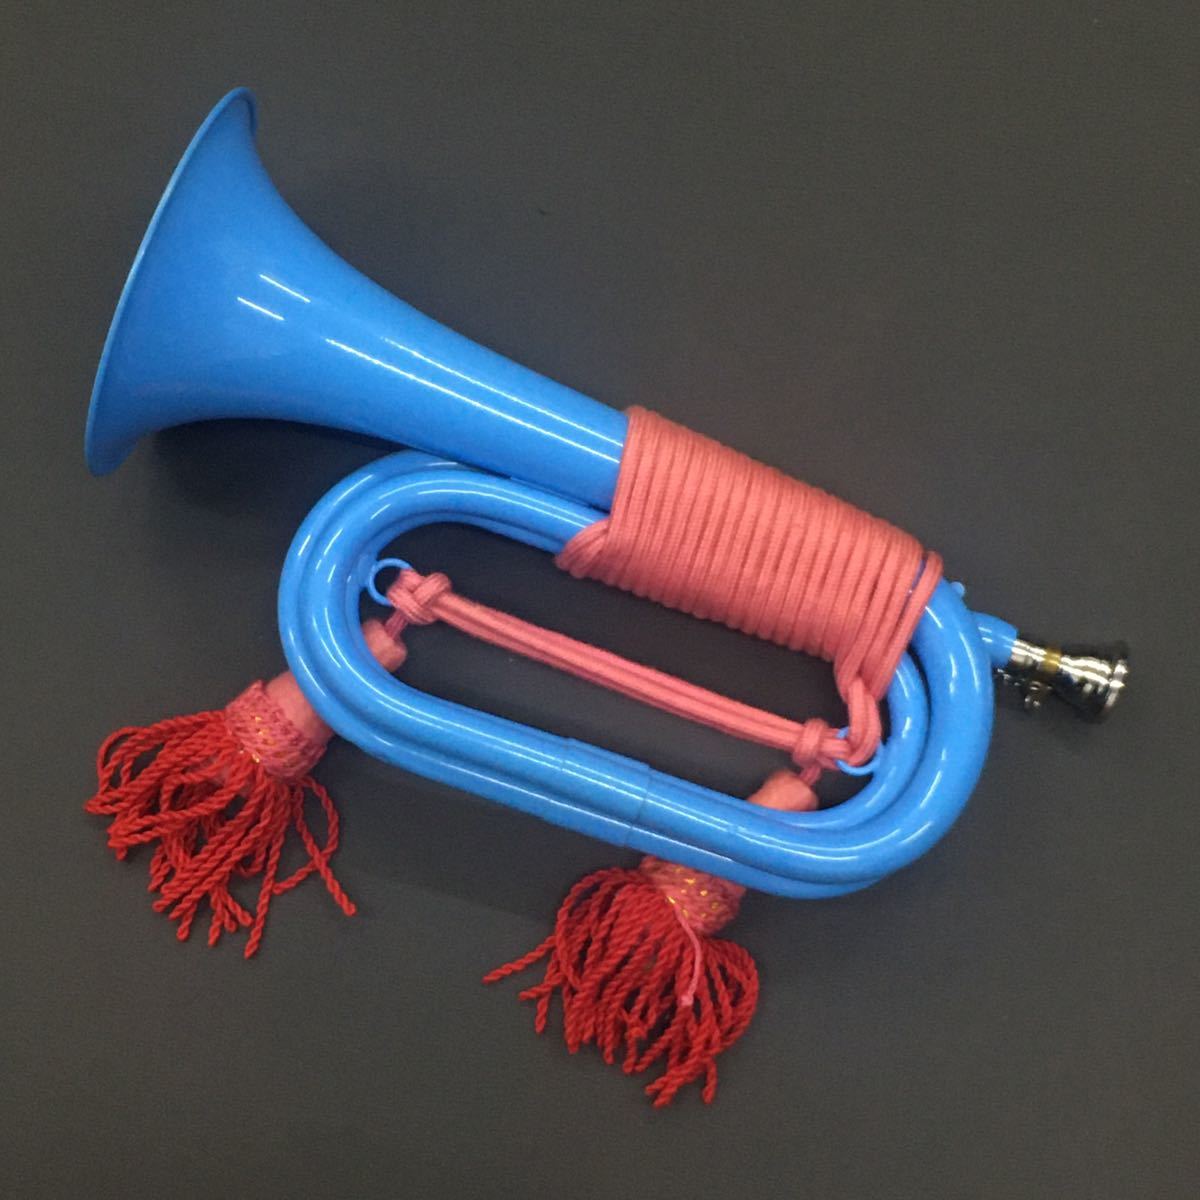  сигнал труба вид gru звуковой сигнал медные духовые инструменты маленький размер эластичный труба эластичный труба фиксация винт украшение шнур имеется 